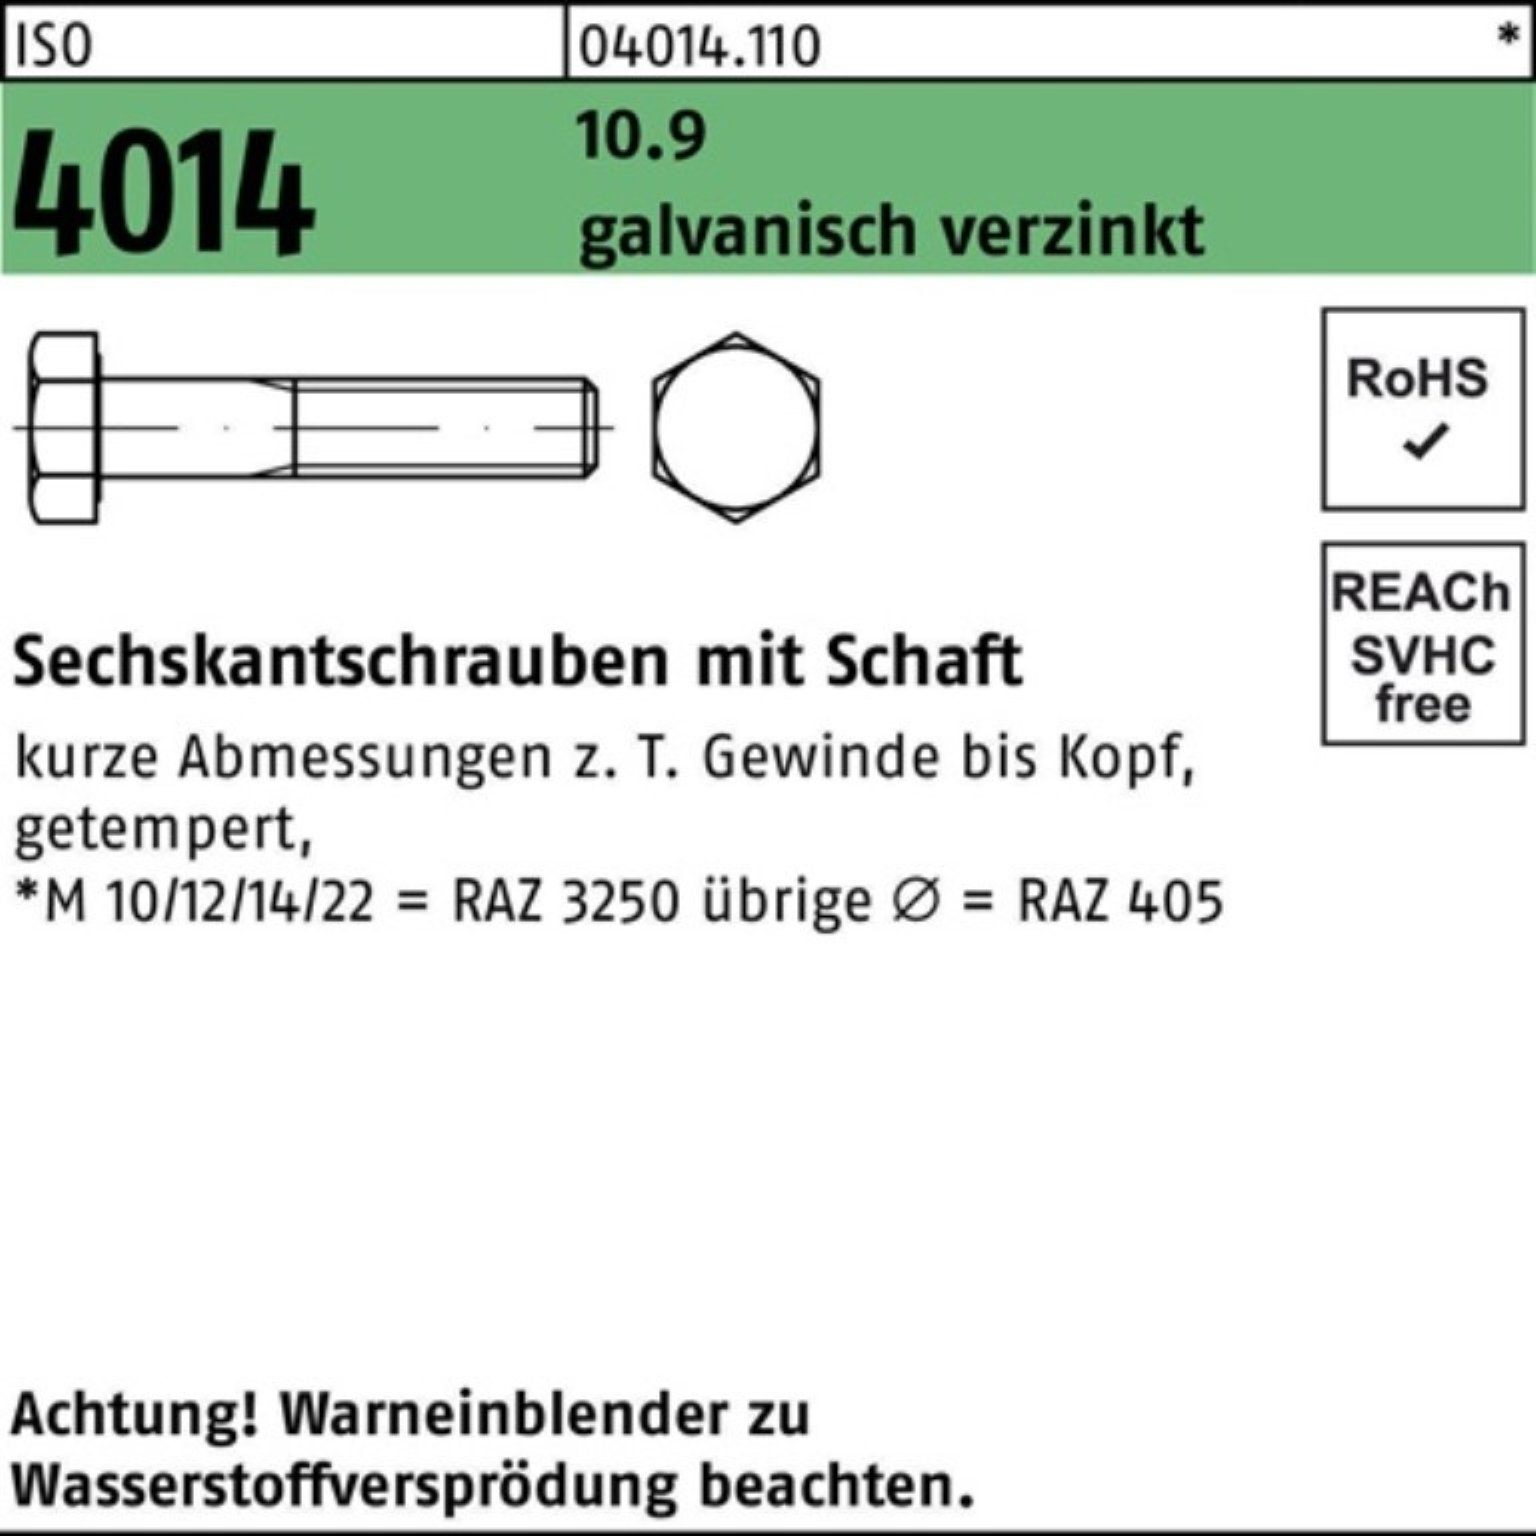 Bufab Sechskantschraube 100er Pack 10.9 M24x Schaft Sechskantschraube galv.verz. 250 4014 ISO